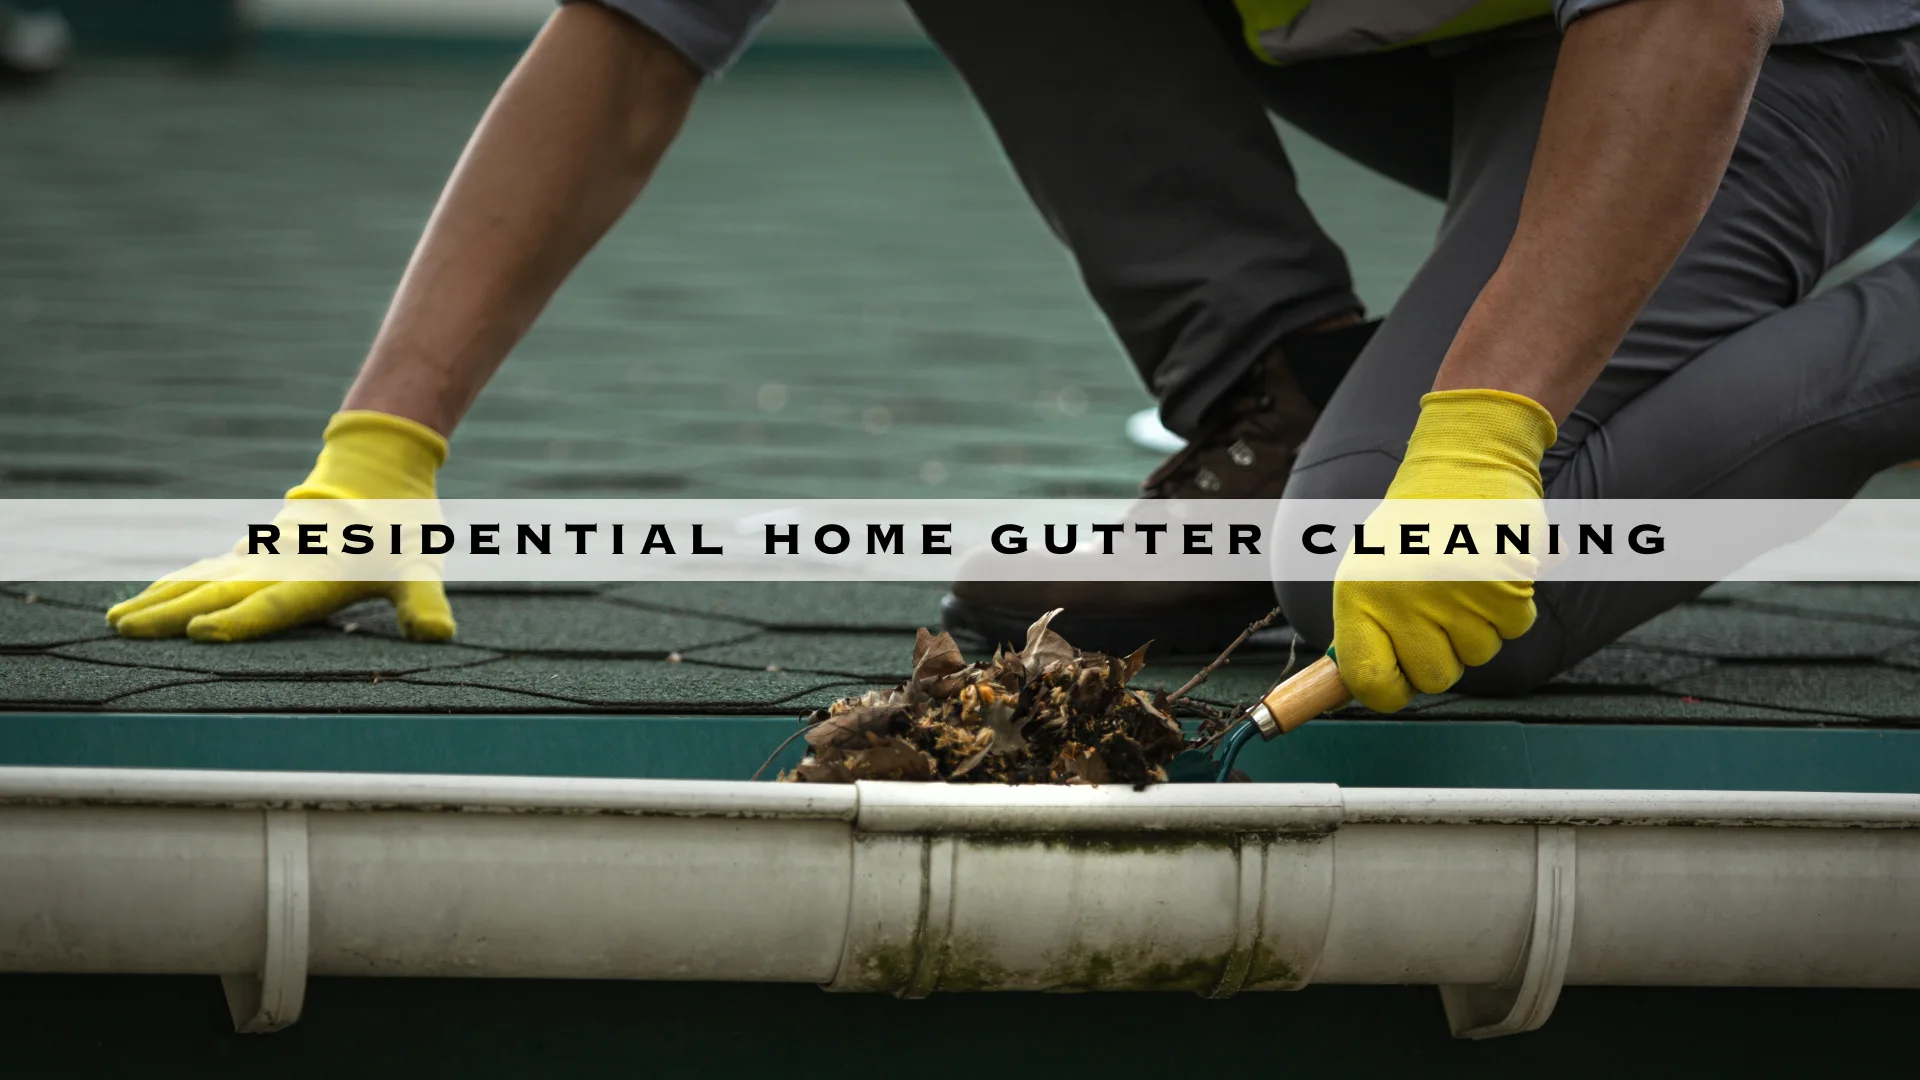 RESIDENTIAL HOME GUTTER CLEANING - HERO DESKTOP